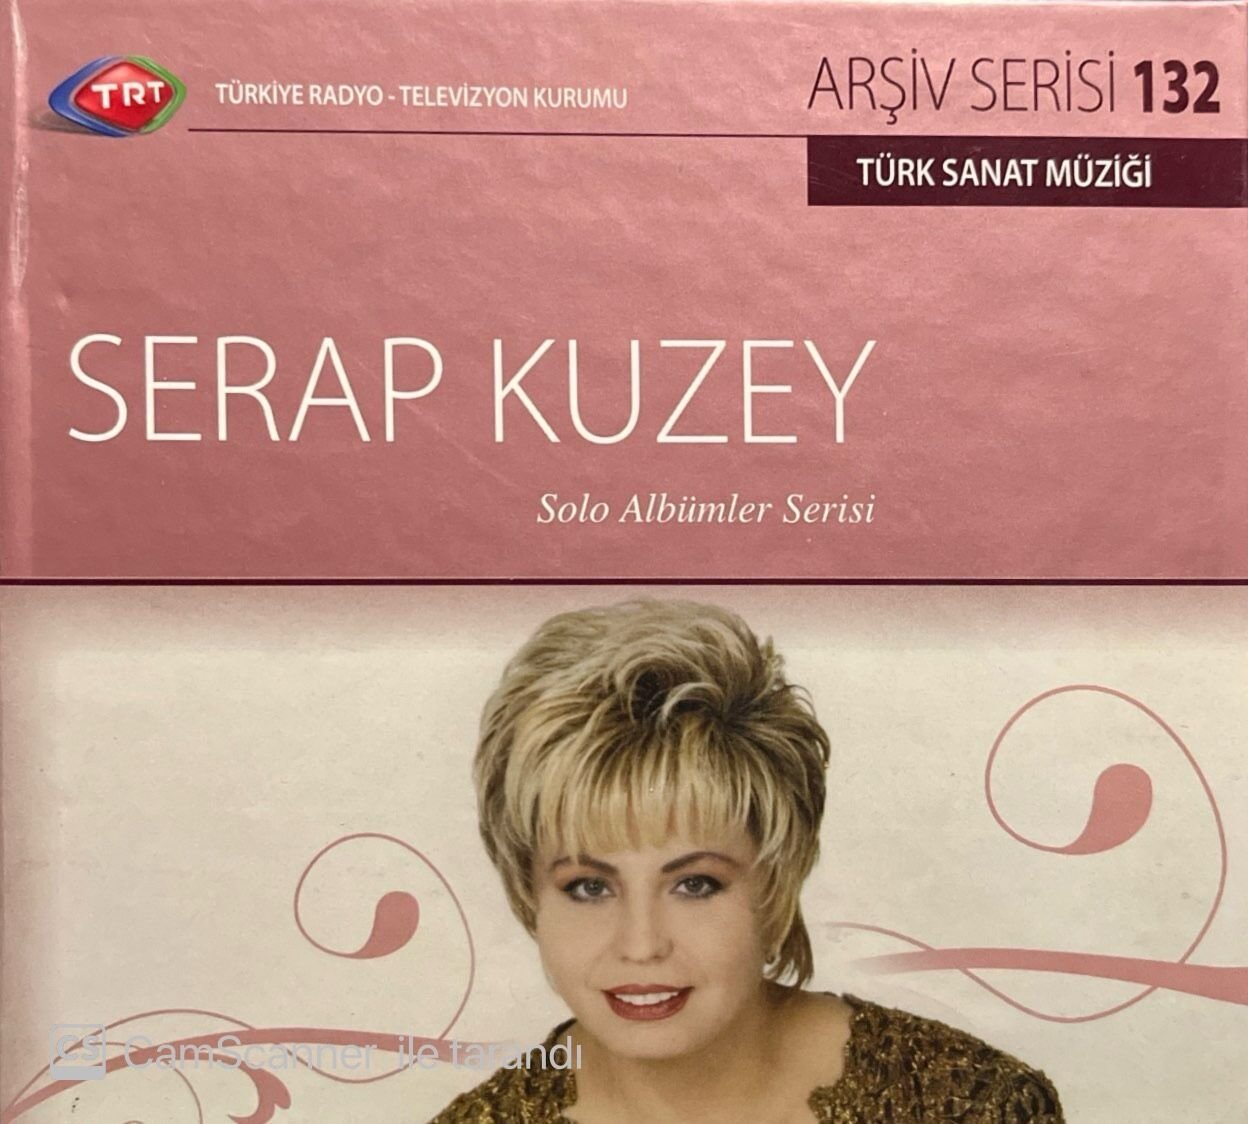 TRT Arşiv Serisi 132 Serap Kuzey Solo Albümler Serisi CD